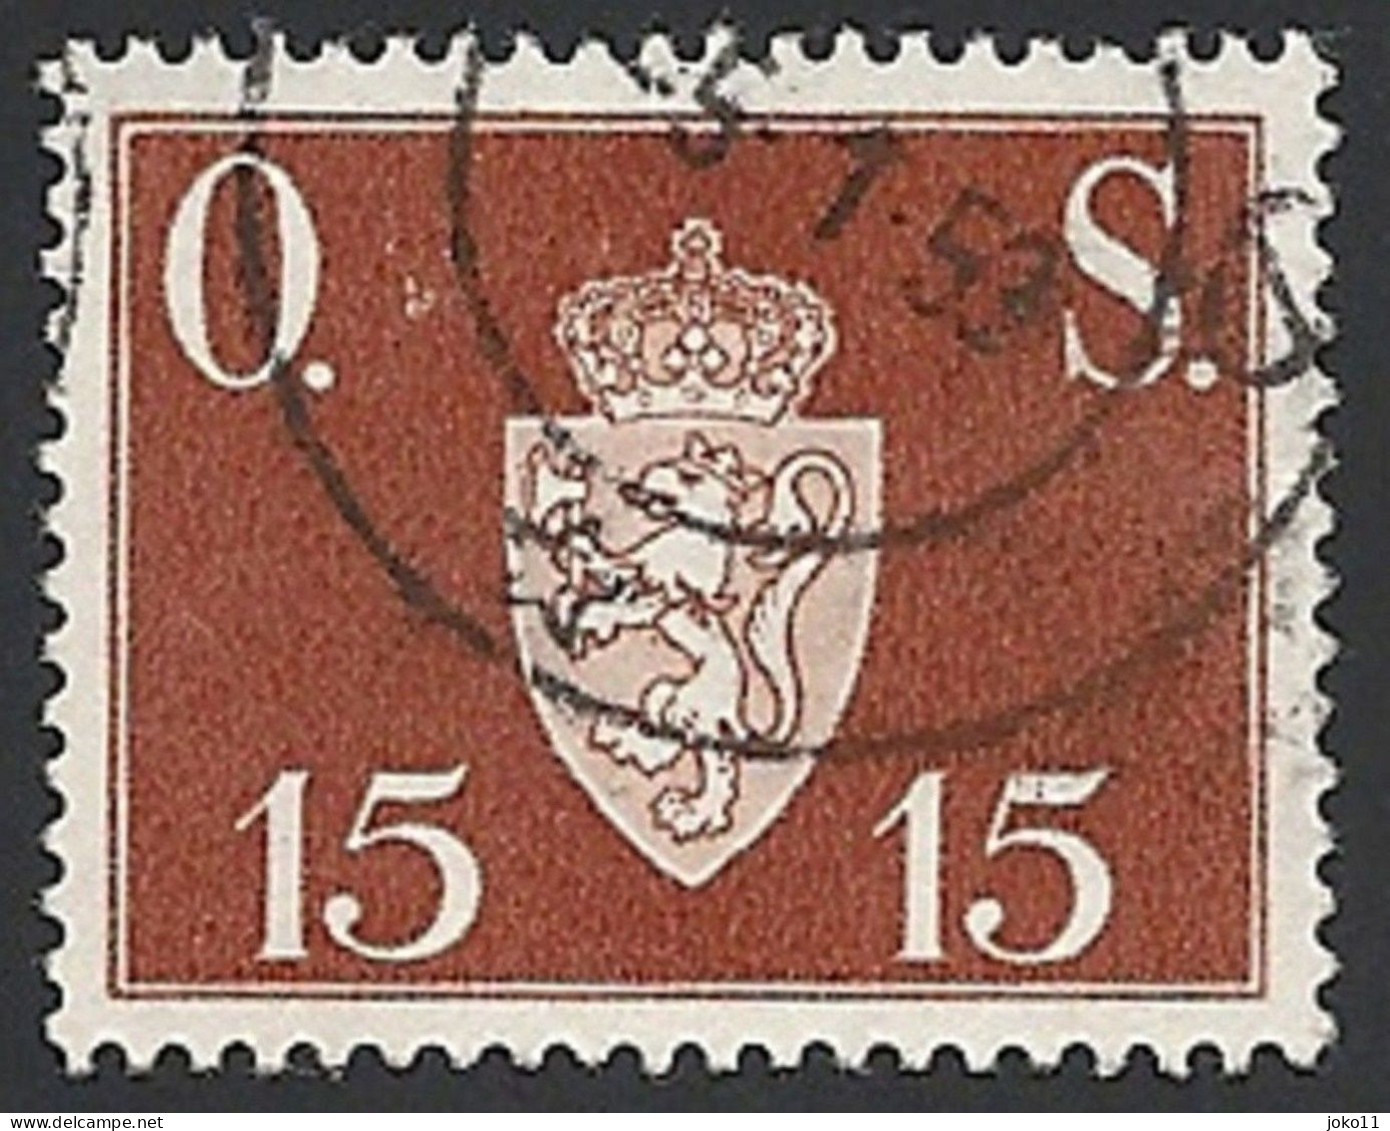 Norwegen Dienstm. 1951, Mi.-Nr. 63, Gestempelt - Dienstzegels